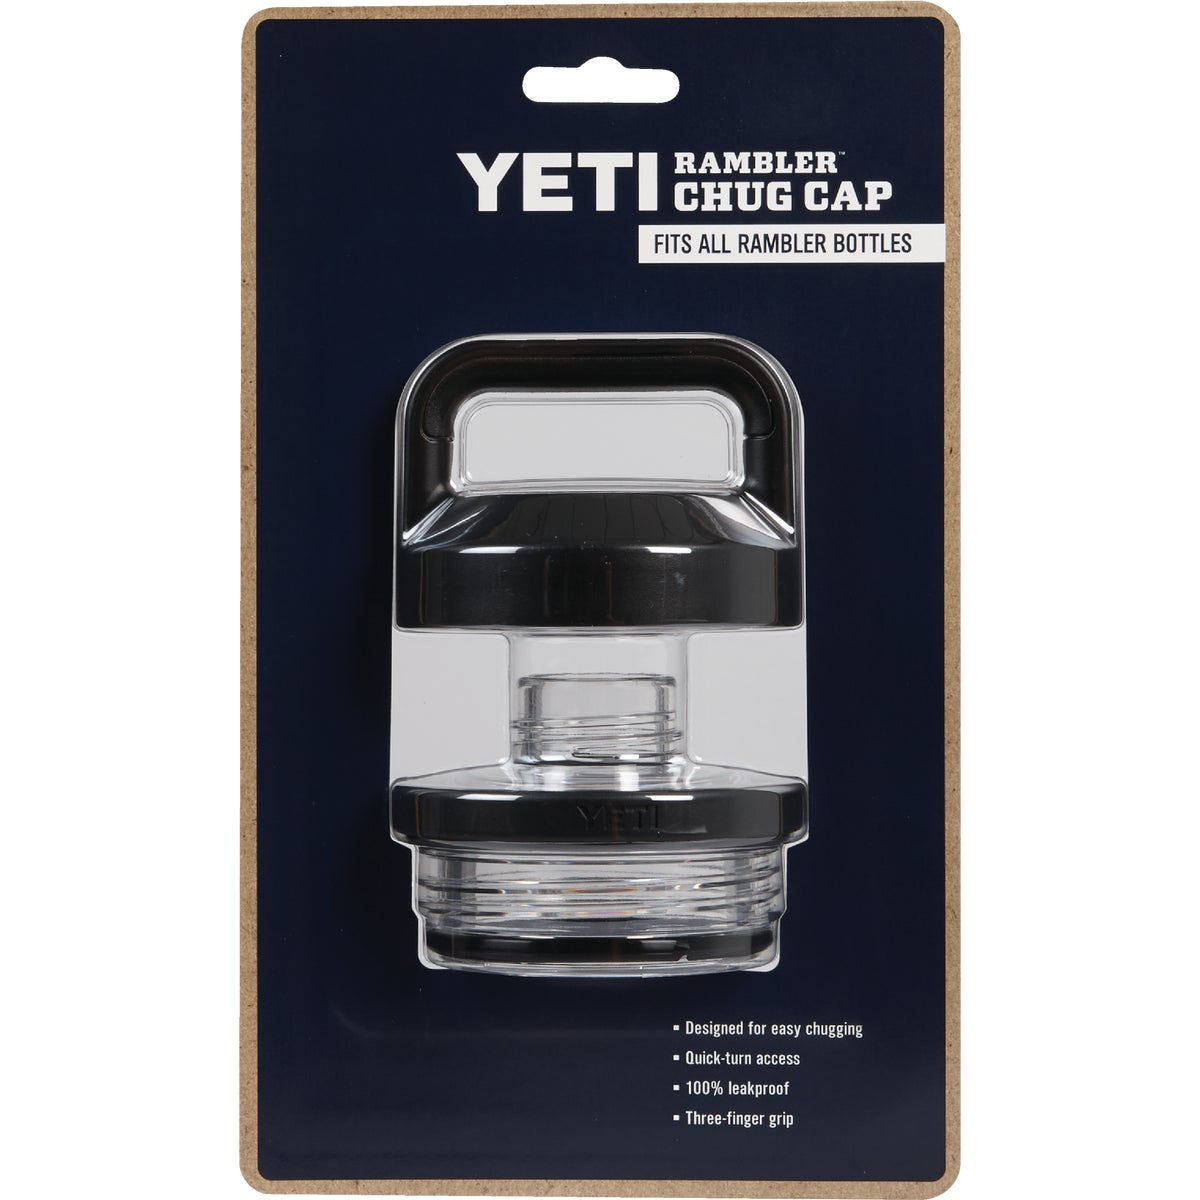 Yeti 21070100005 Rambler Bottle Chug Cap for sale online